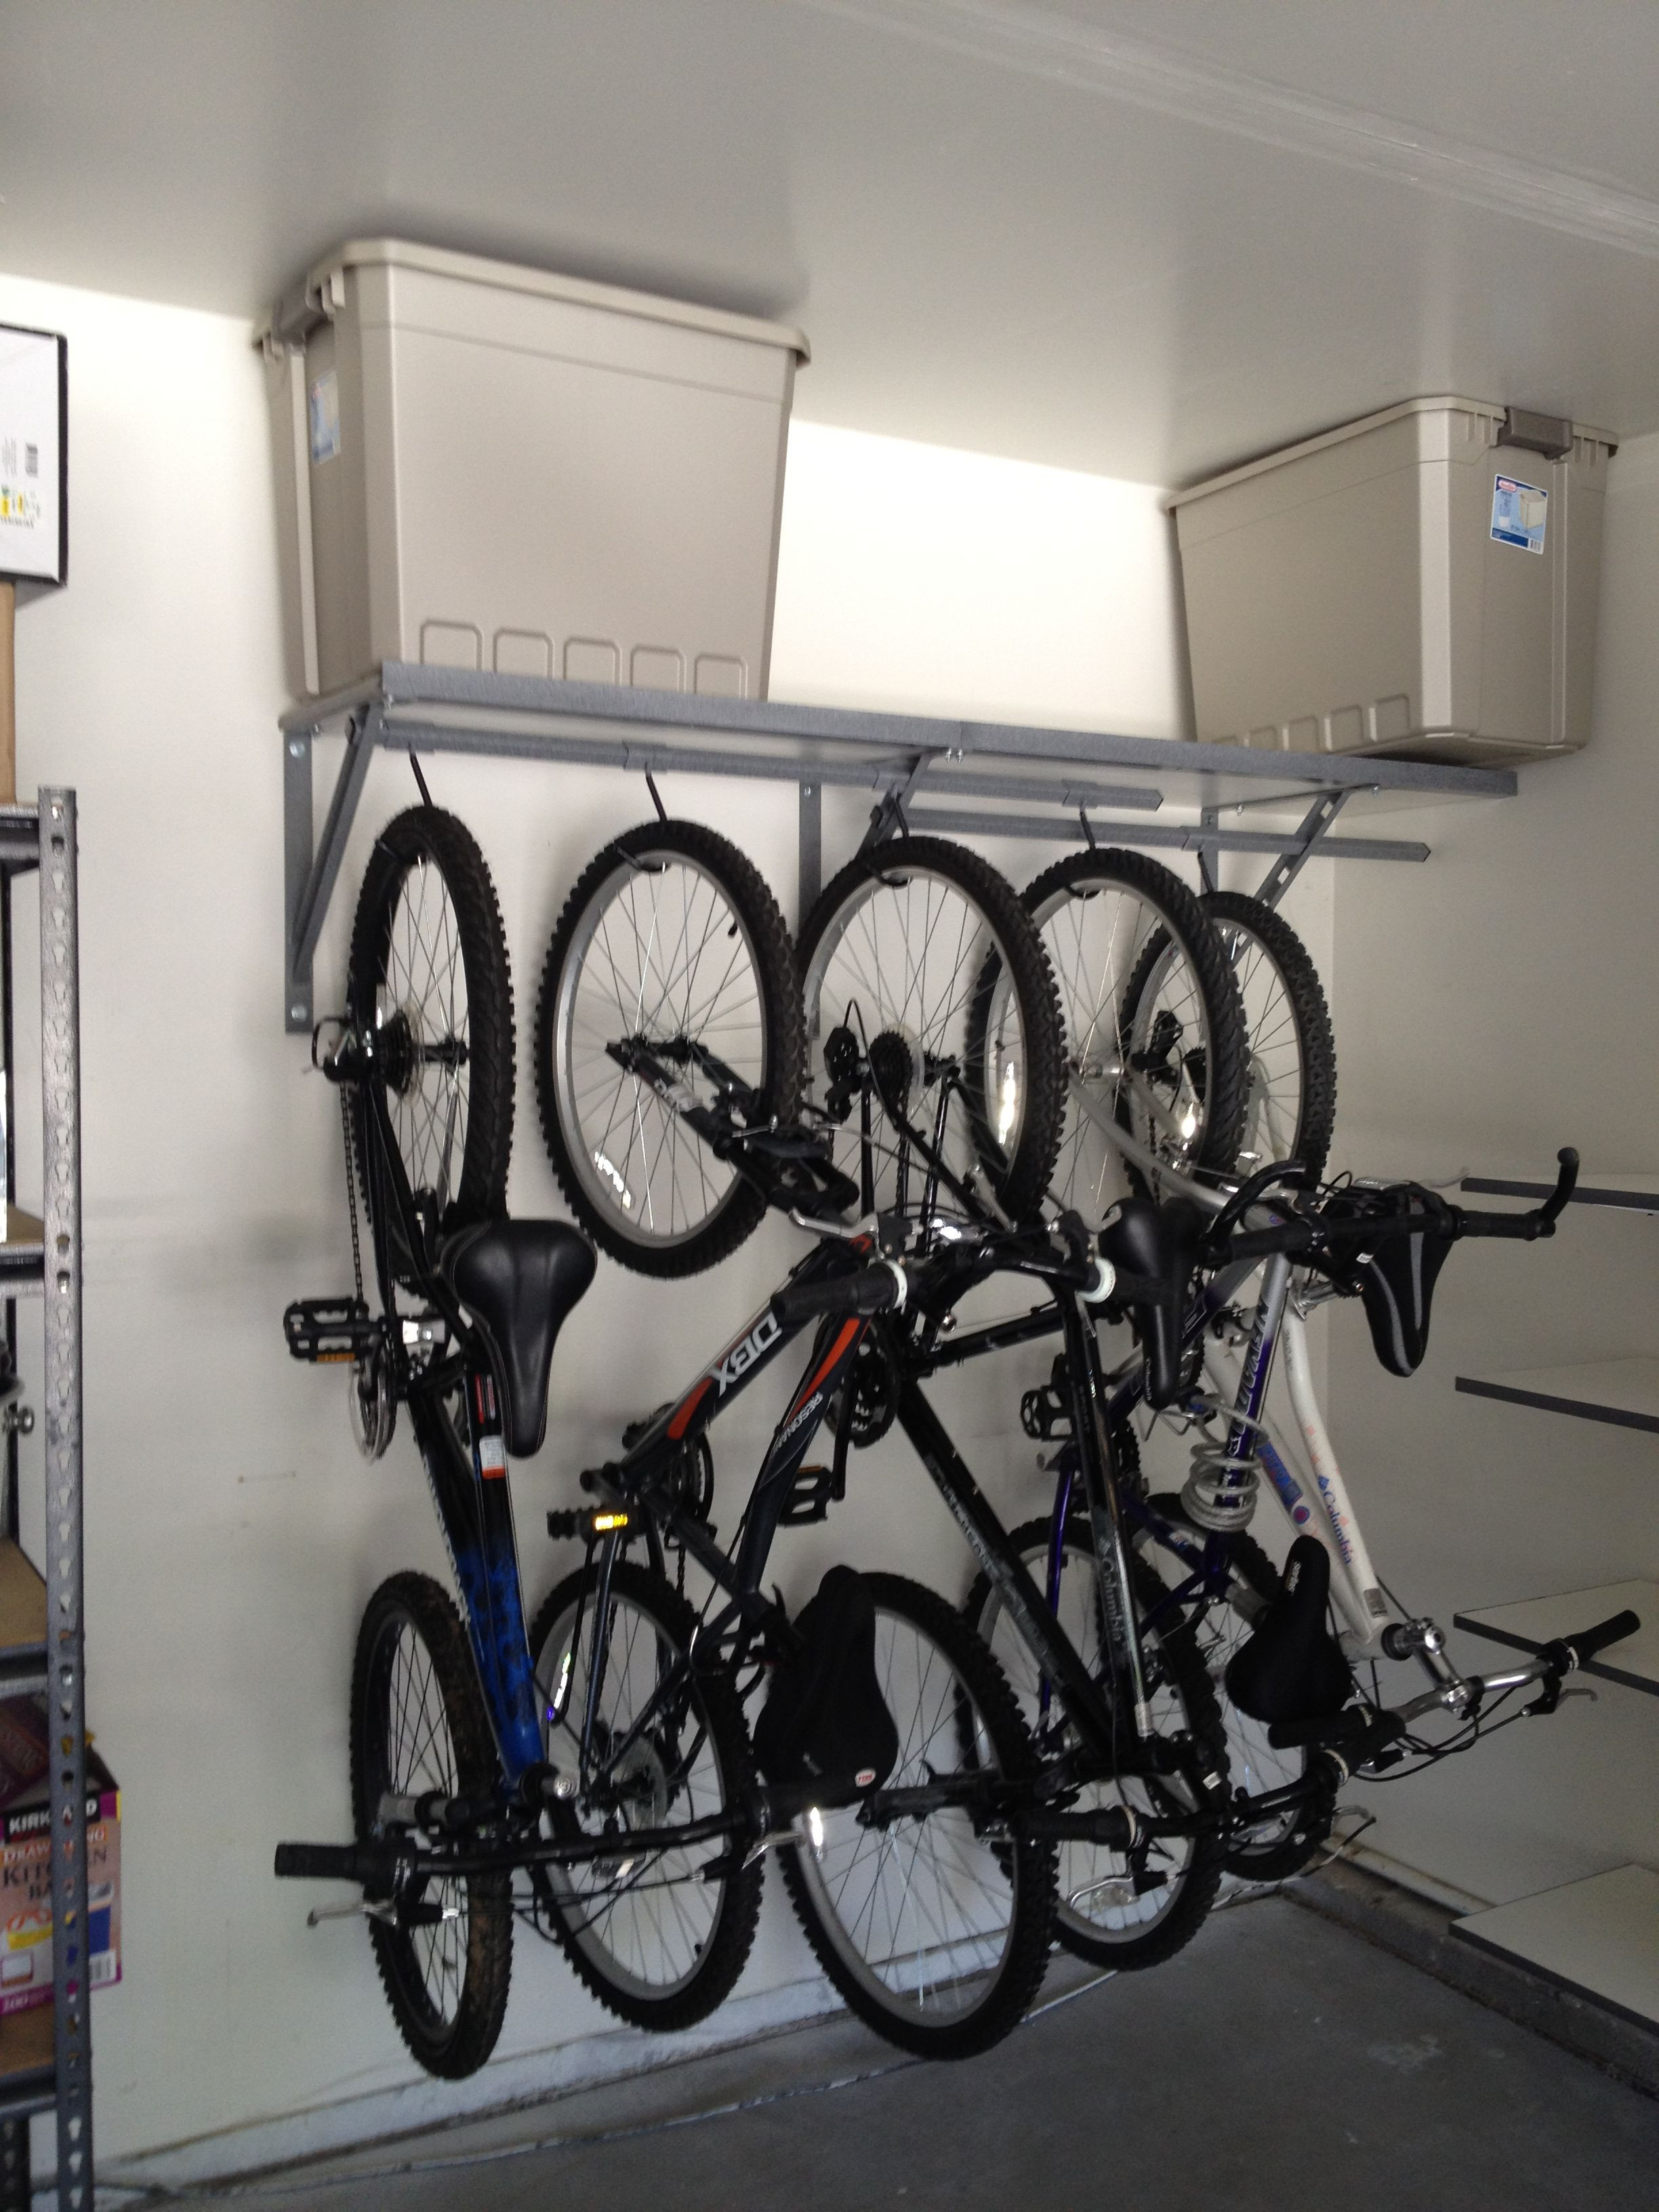 Best ideas about Bike Racks Garage Storage
. Save or Pin garage bike storage Good ideas for the home Now.